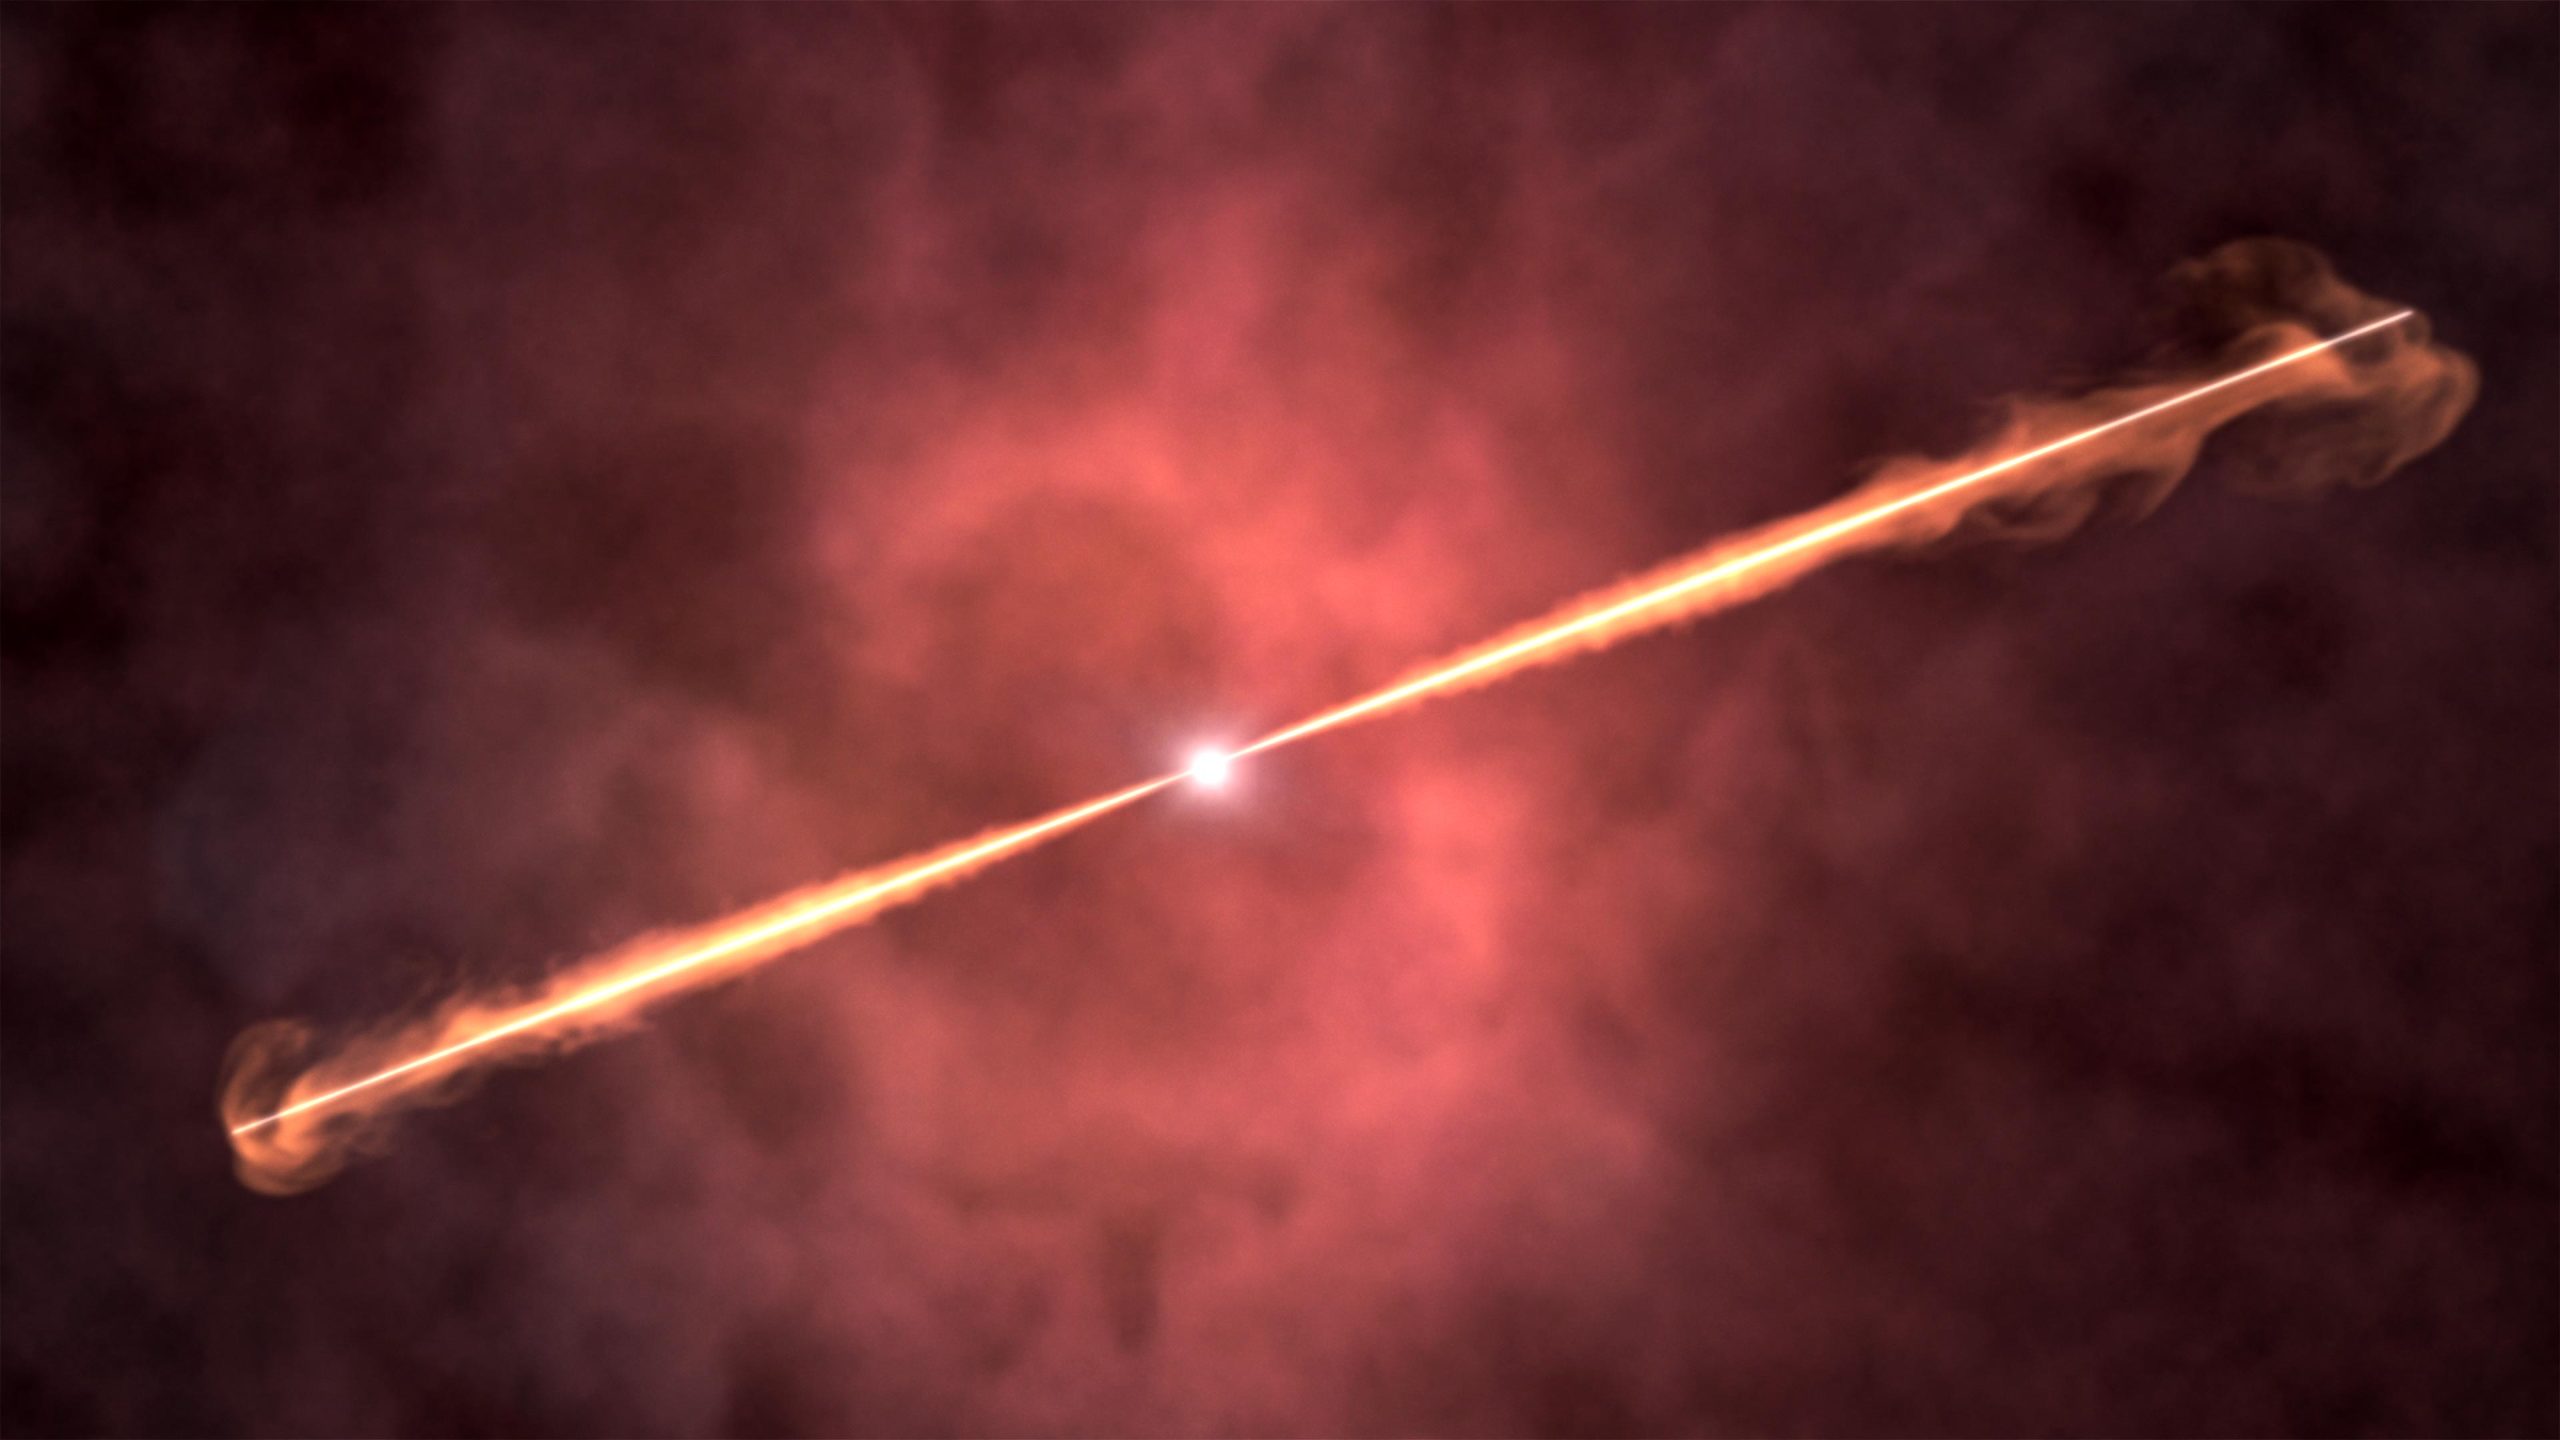 La NASA rastrea el evento cósmico más brillante jamás registrado: “¡Esto es una locura!”